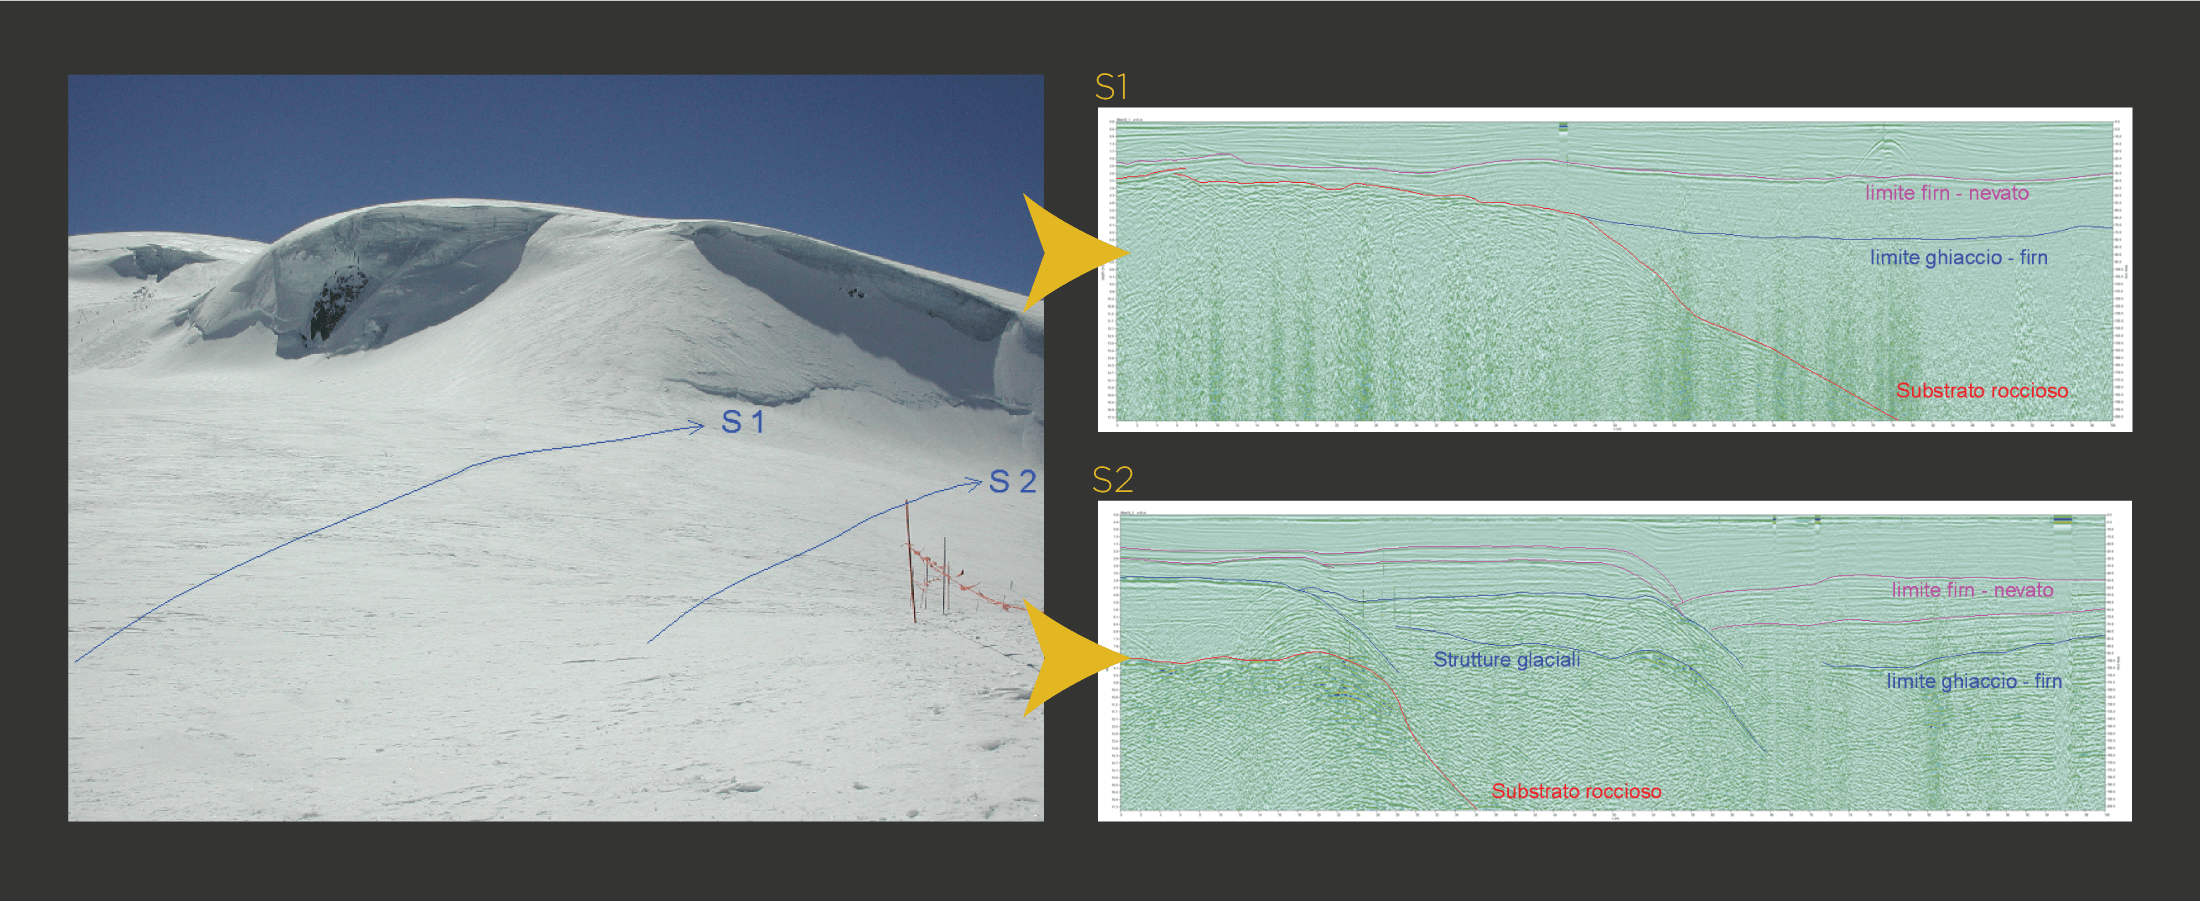 Determinazione dello spessore del ghiacciaio, della profondità del substrato e delle sue proprietà. Individuazione delle diverse strutture glaciali (pieghe, thrusts, crepacci, fratture). Riconoscimento di apparati morenici sepolti. Riconoscimento di flussi idrici interni al ghiacciaio, canali, reti di drenaggio, laghi sottoglaciali ed interni. Studio degli spessori e delle caratteristiche dei livelli di neve e firn. Determinazione della profondità del permafrost.